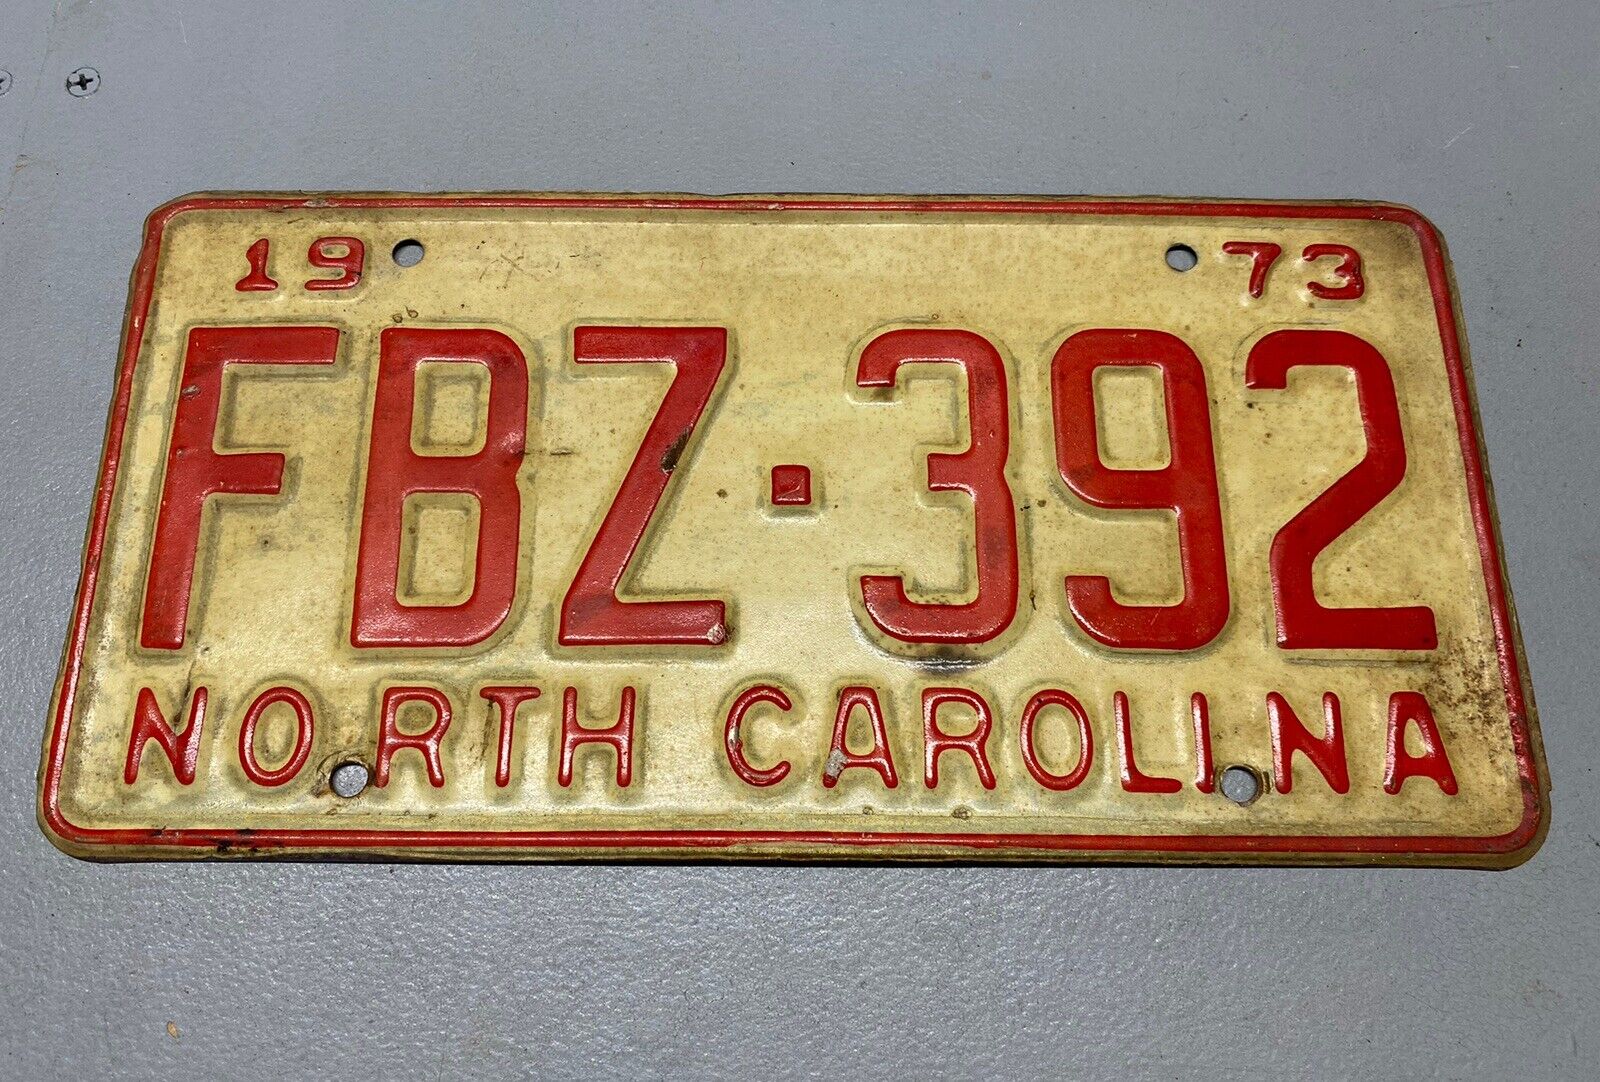 Vintage 1973 North Carolina License Plate FBZ-392